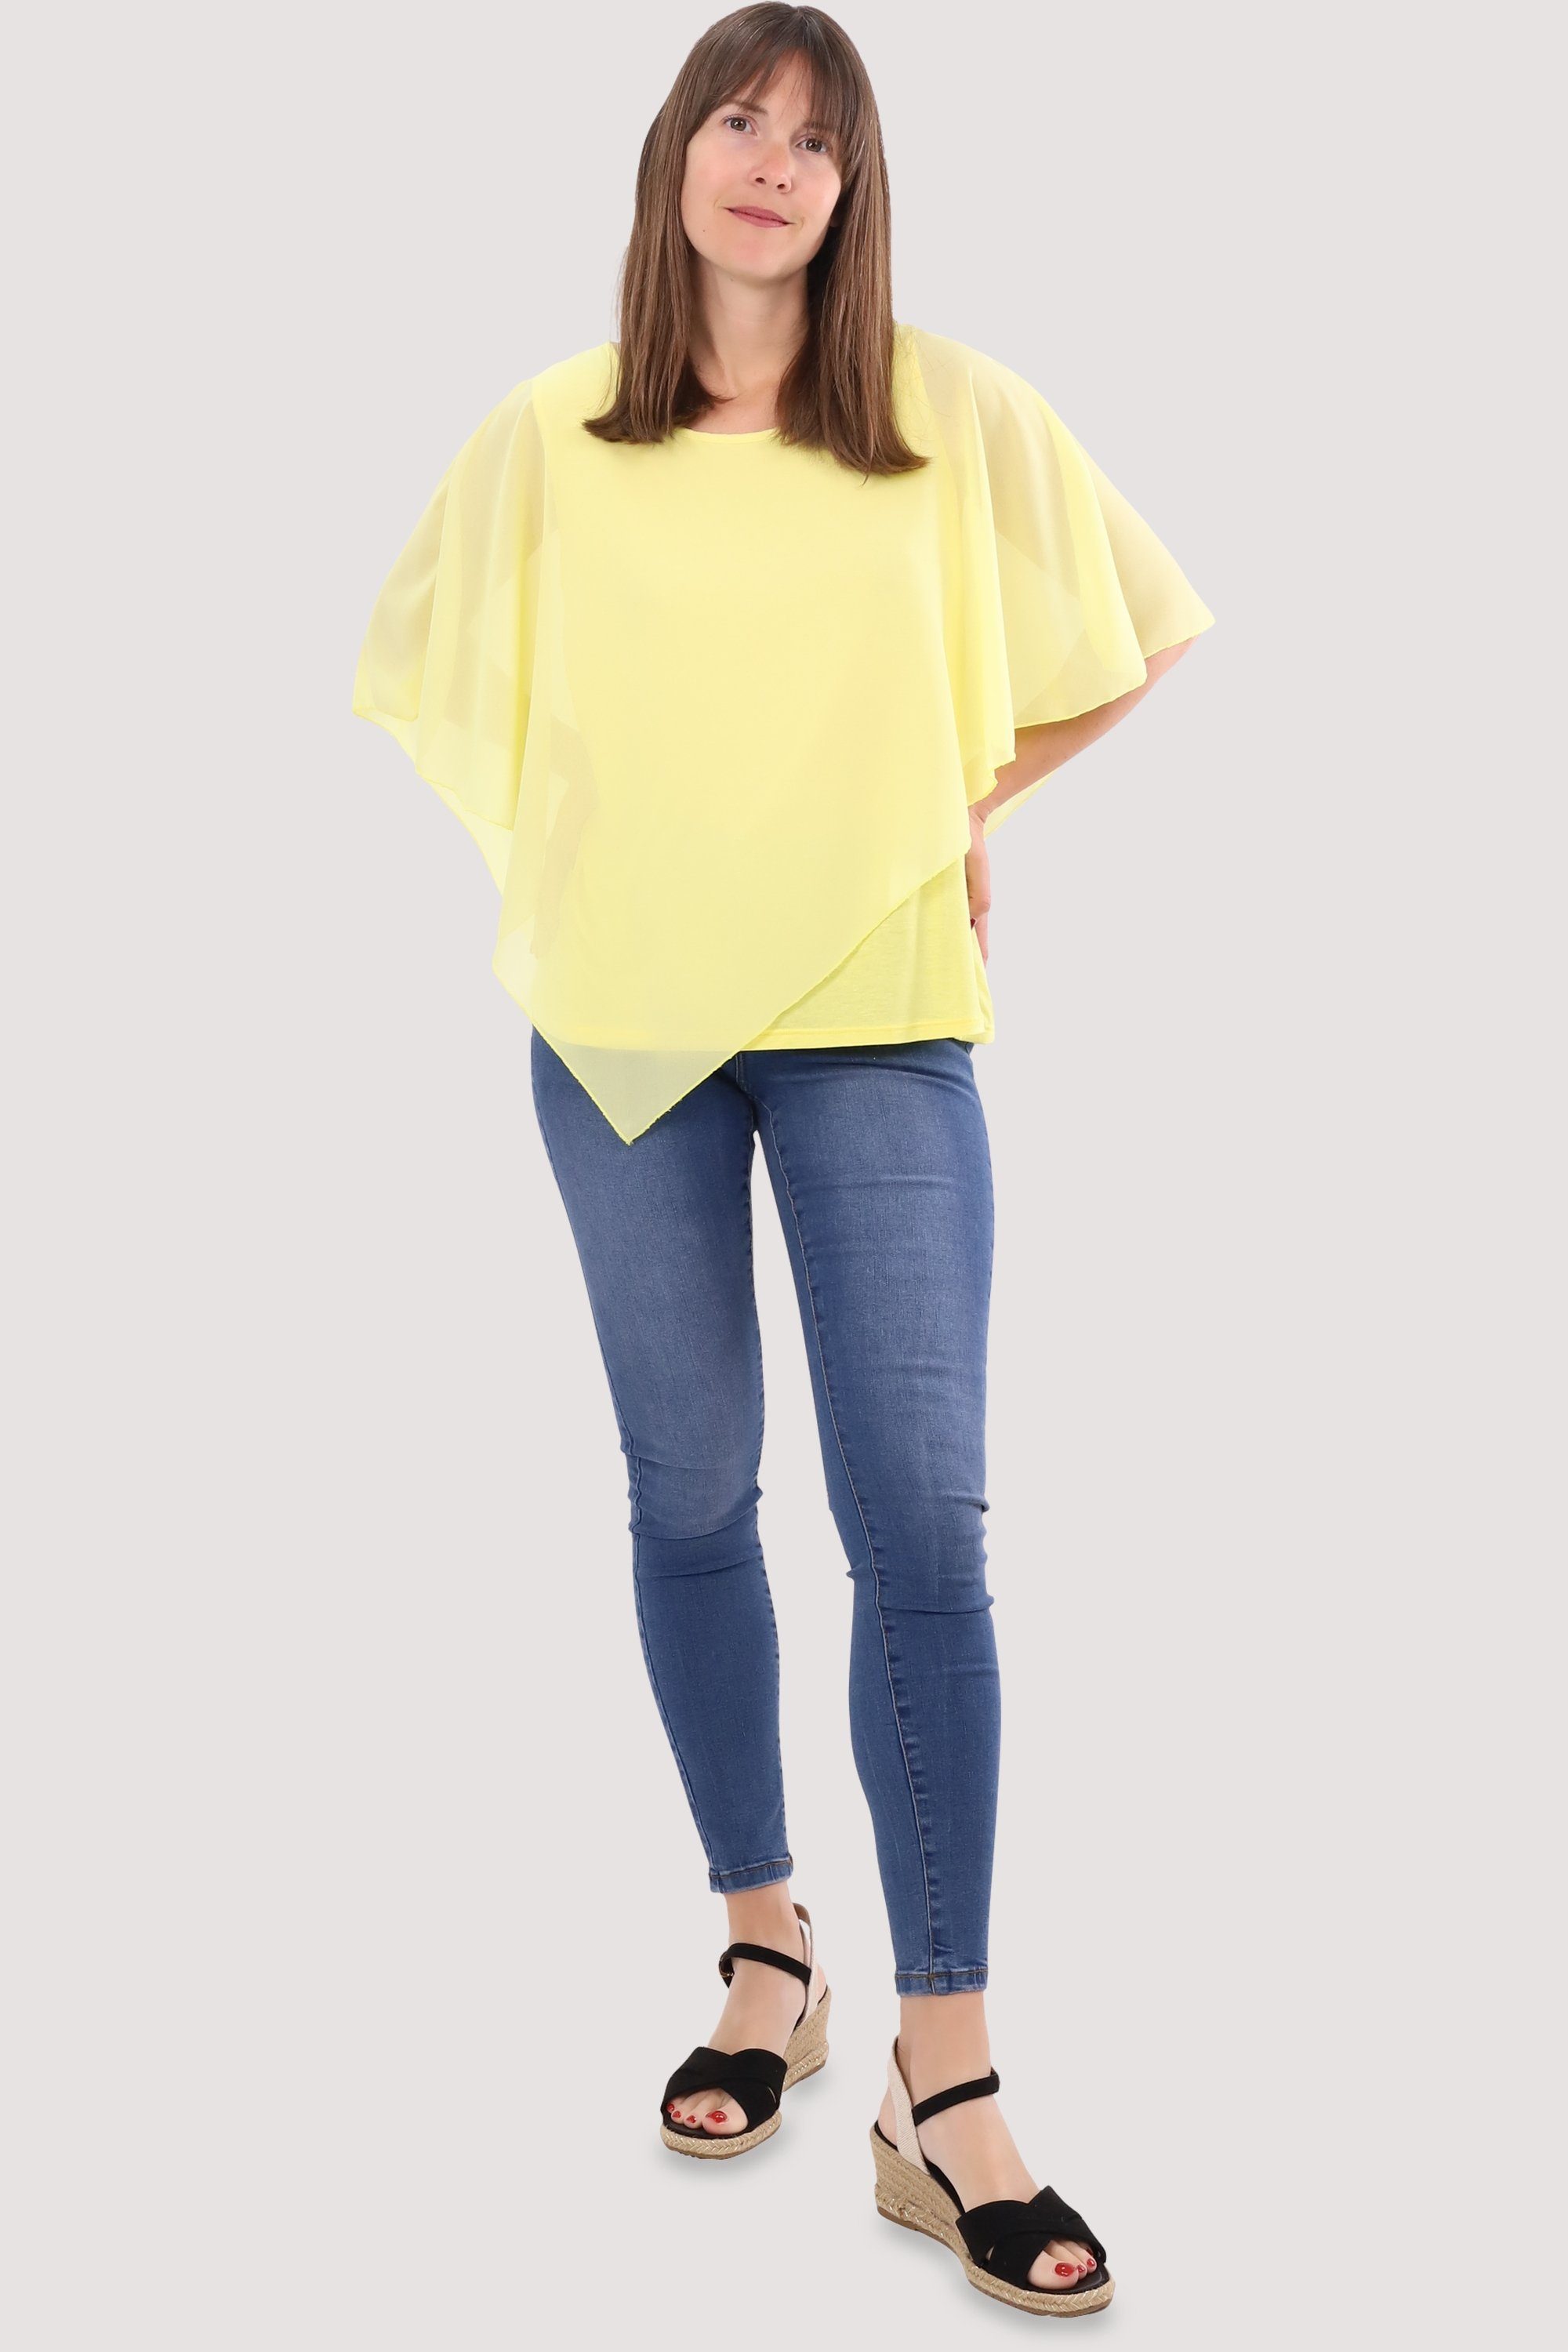 gelb more fashion malito Blusenshirt Chiffonbluse than 10732 geschnitten Schlupfbluse asymmetrisch Einheitsgröße